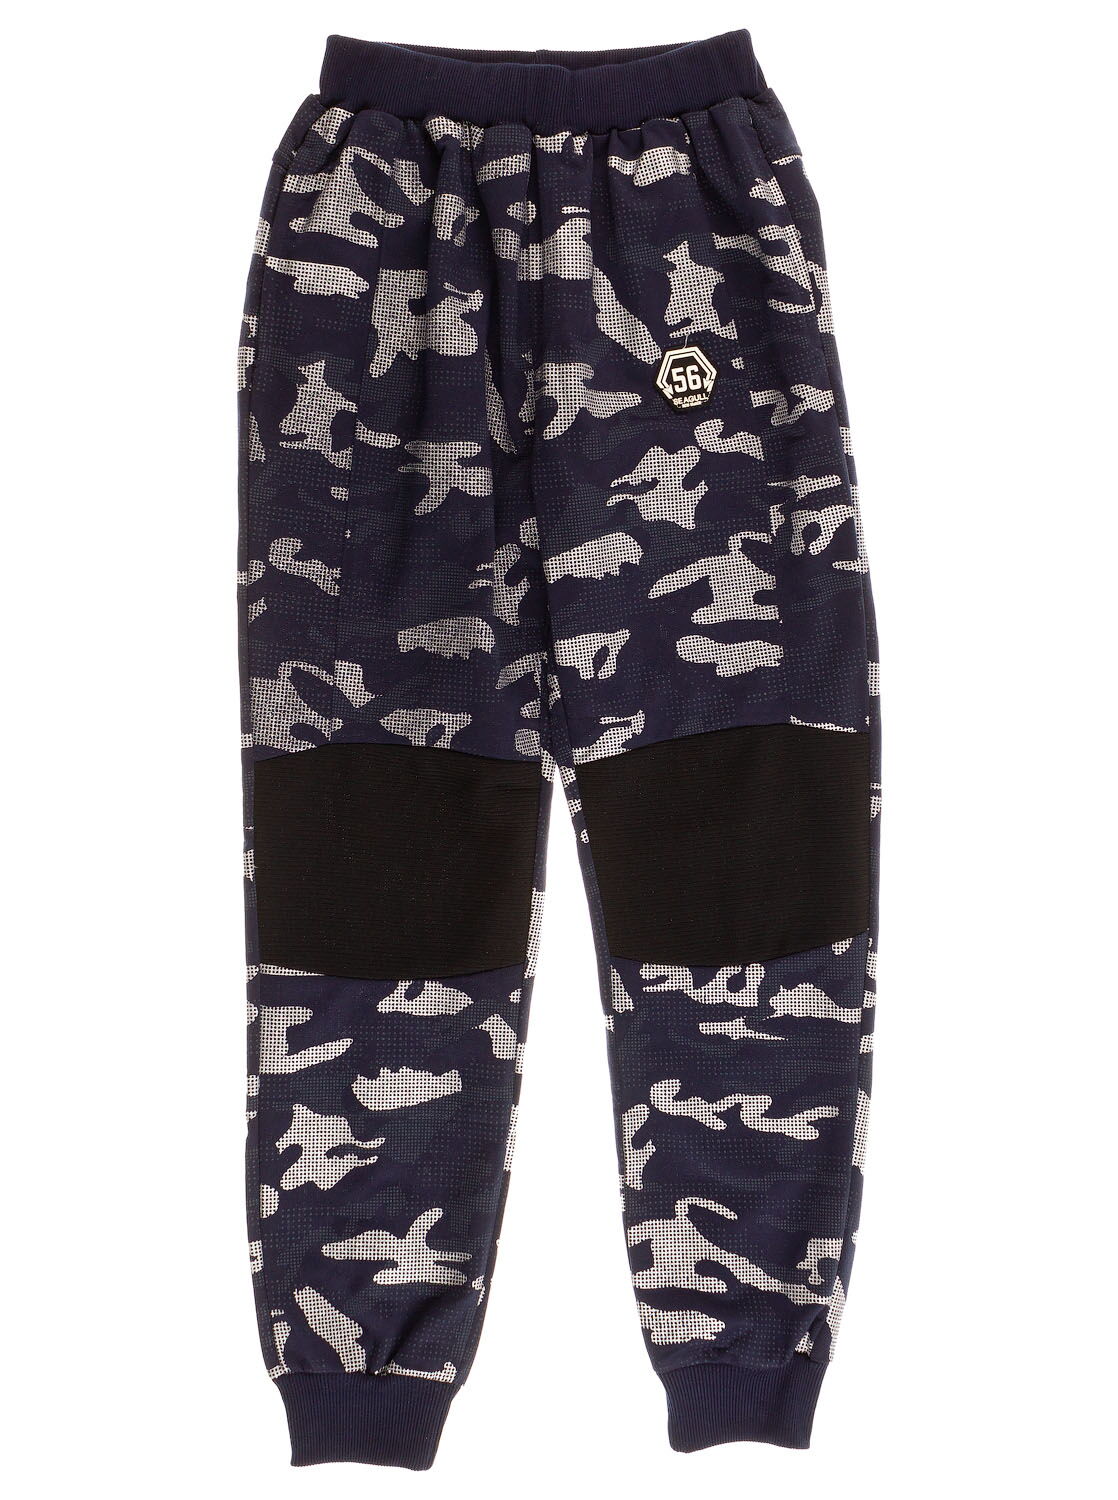 Спортивные штаны для мальчика Seagull синие 58280 - цена